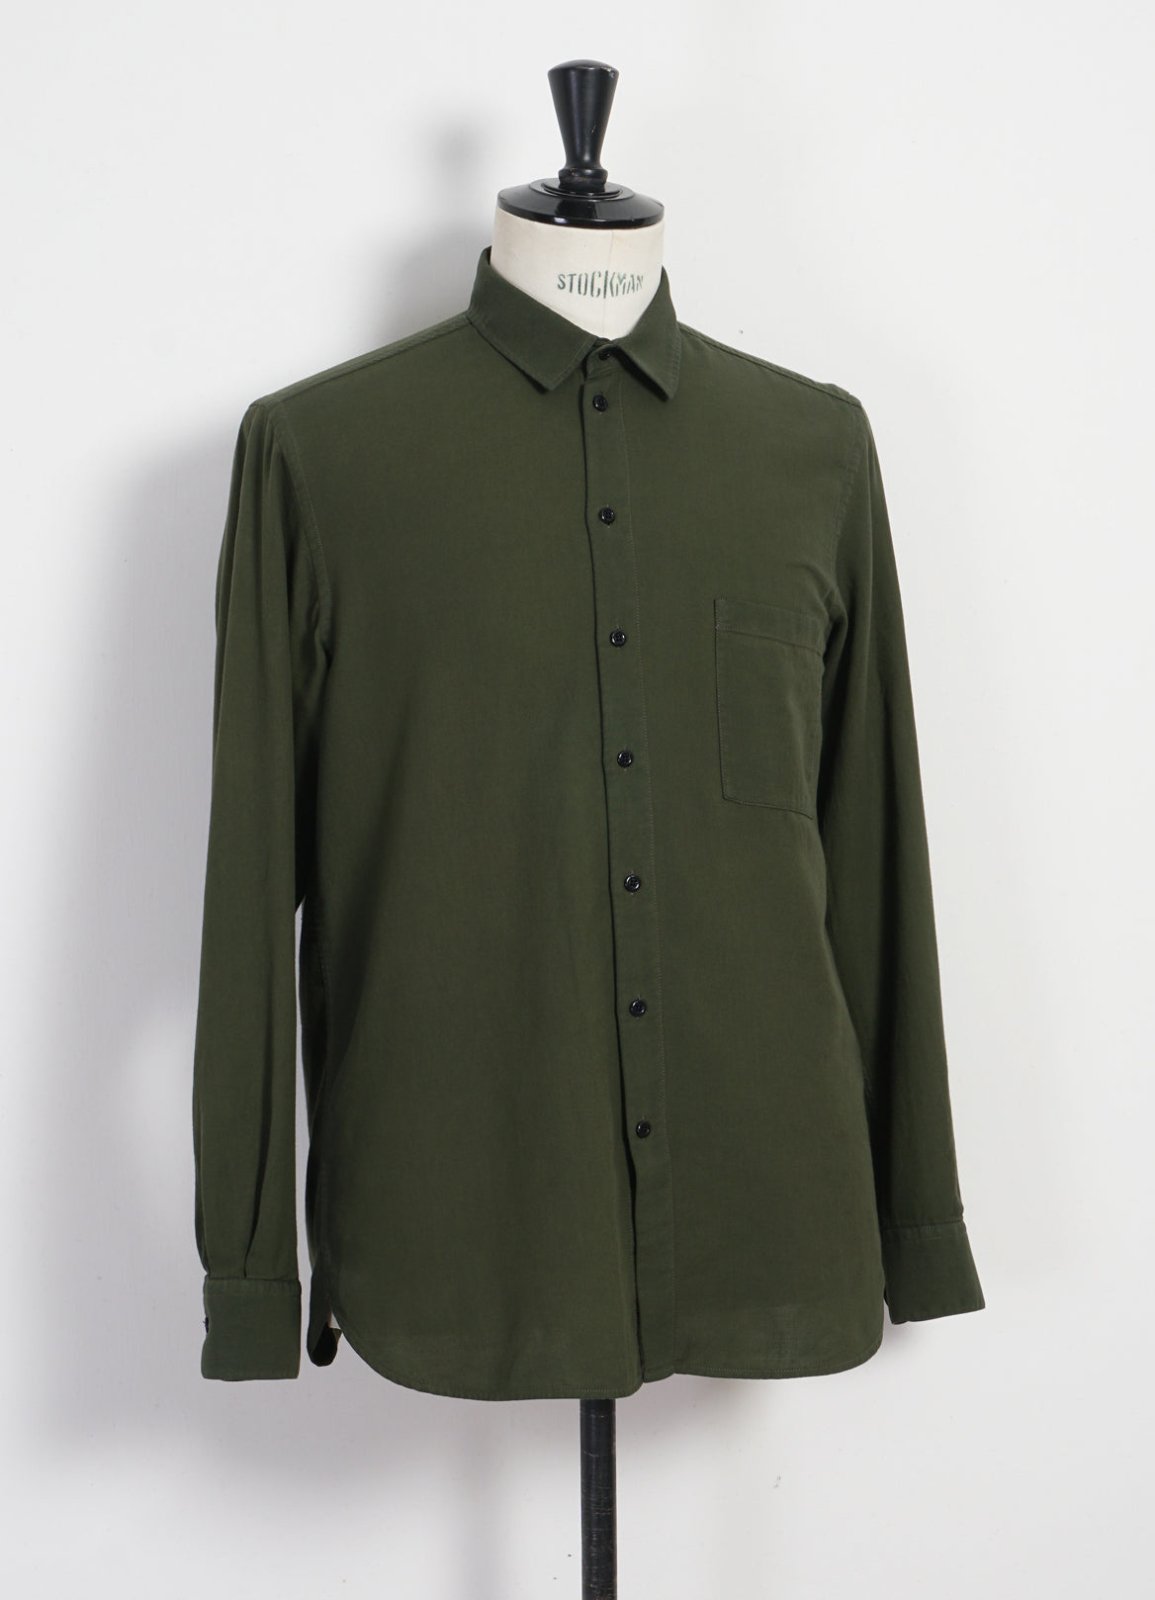 HANSEN GARMENTS - HENNING | Casual Classic Shirt | August Green - HANSEN Garments